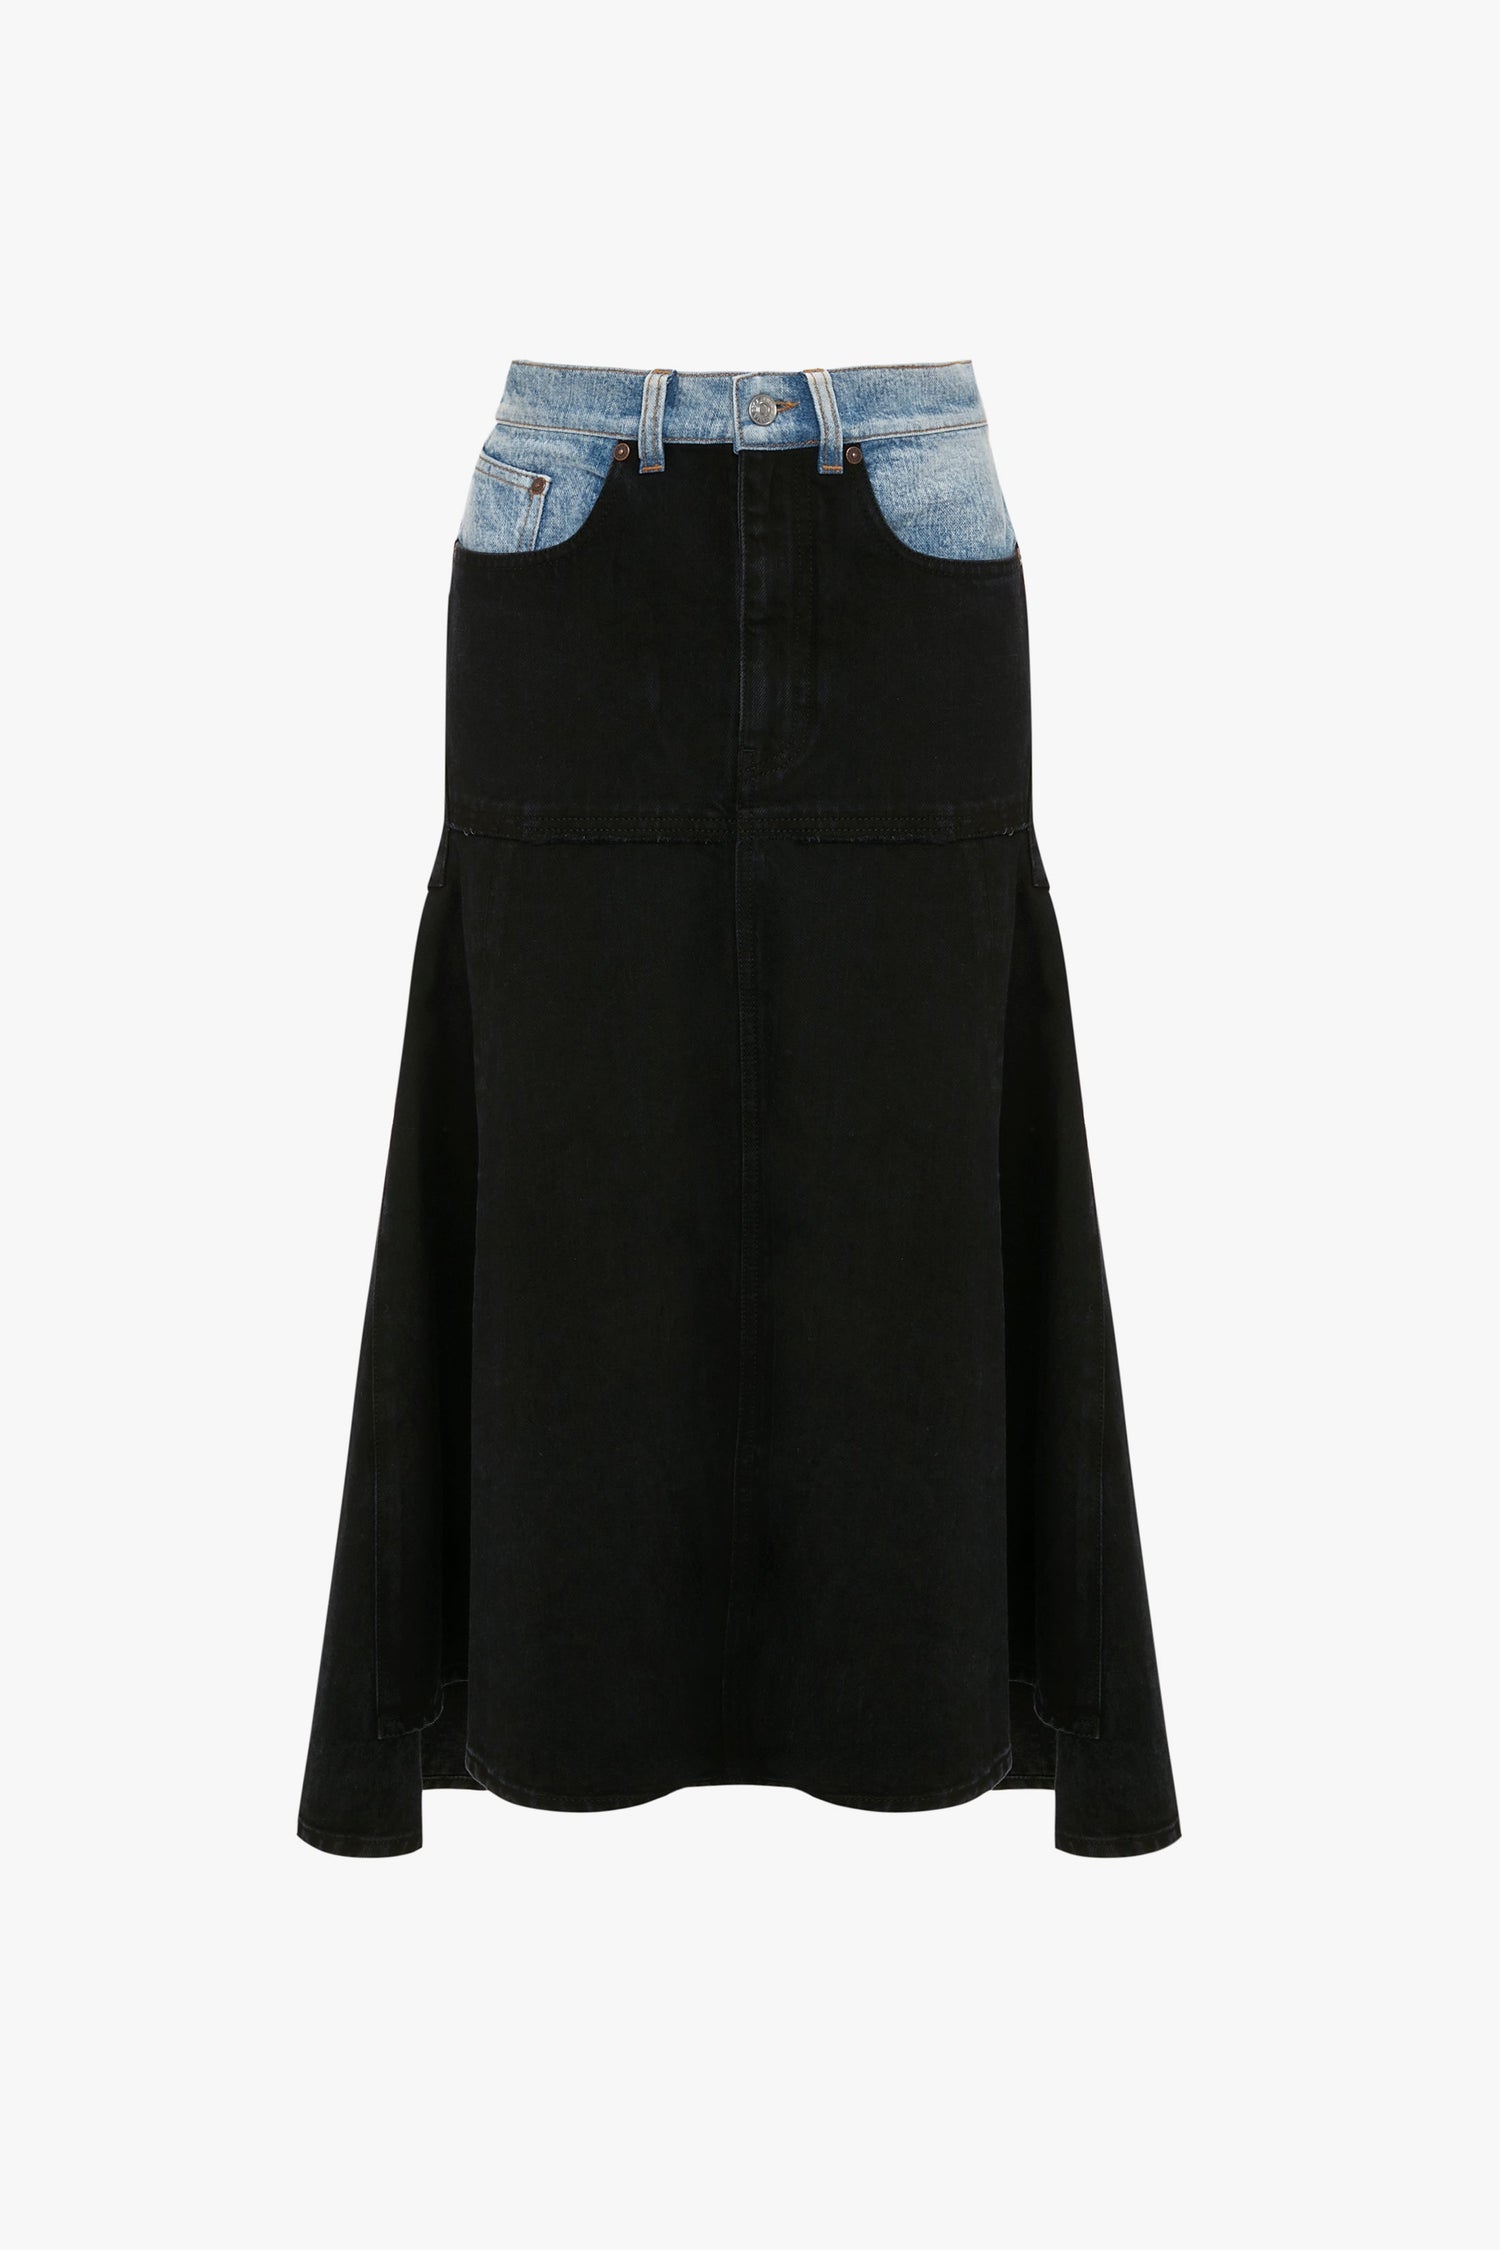 Buy Mast & Harbour Blue Straight Denim Skirt - Skirts for Women 2261830 |  Myntra